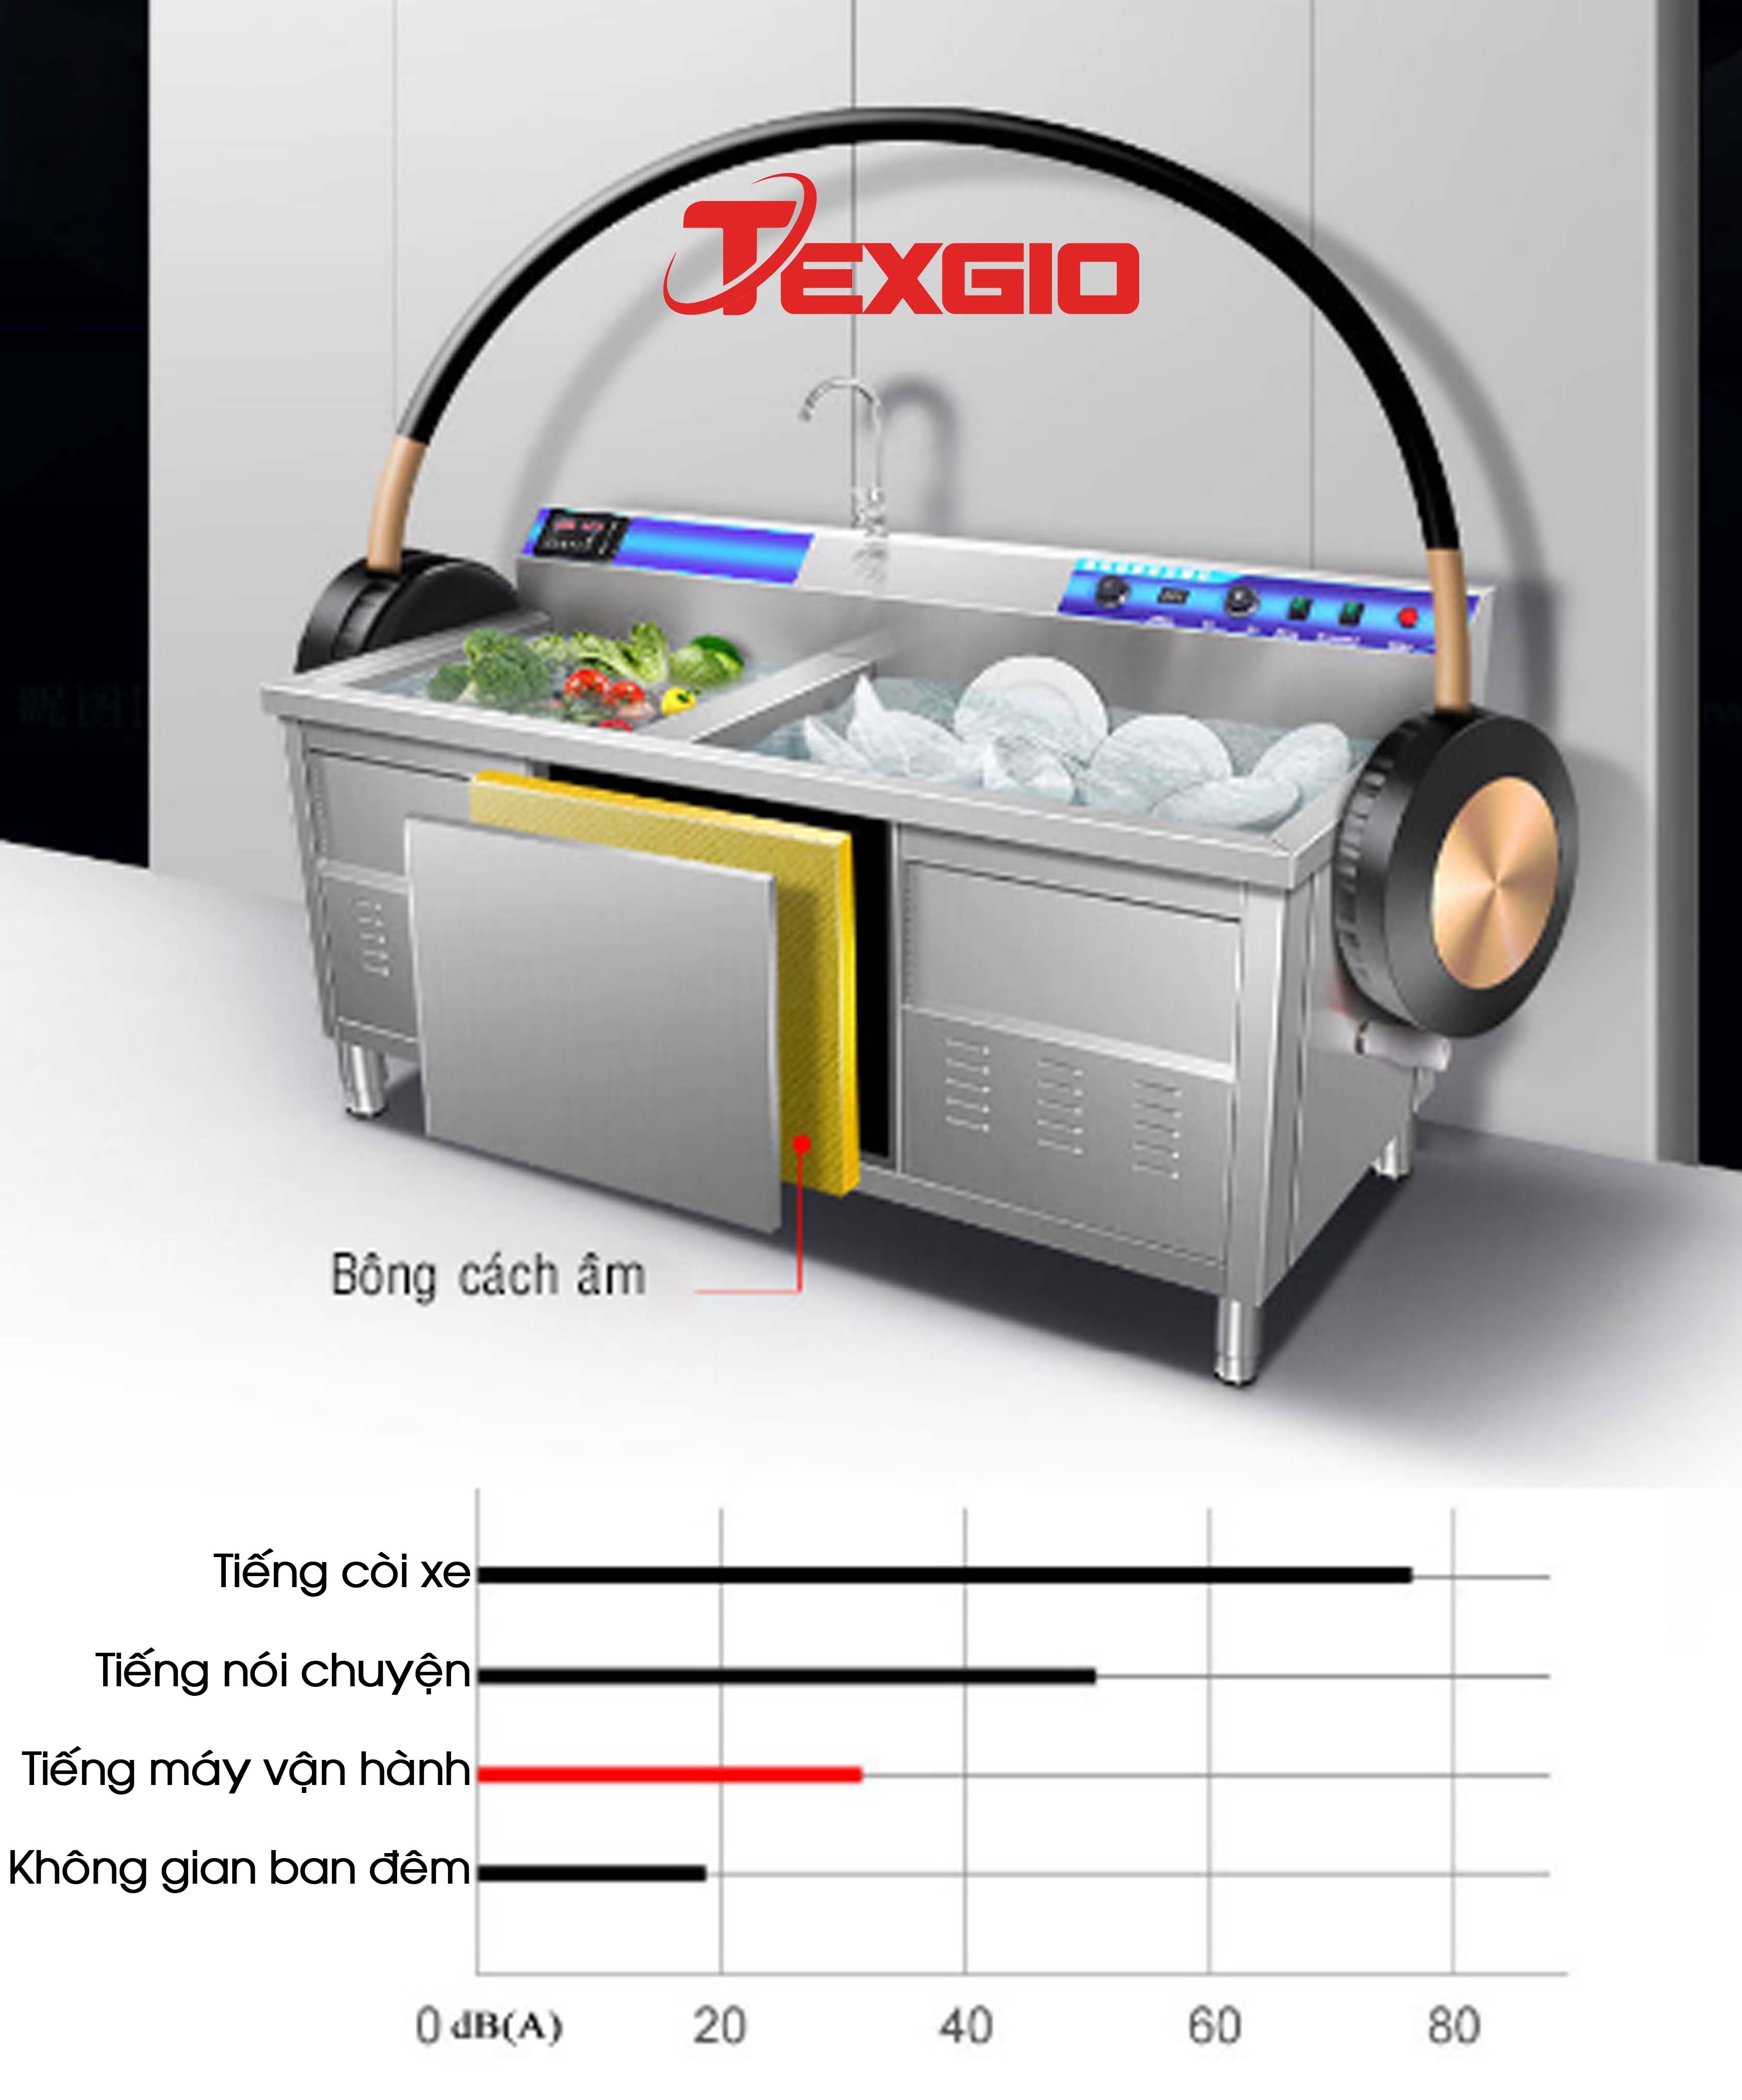 yen20tinh 1 - Máy Công Nghiệp UltraSonic Texgio Luxury TGU-2000HD